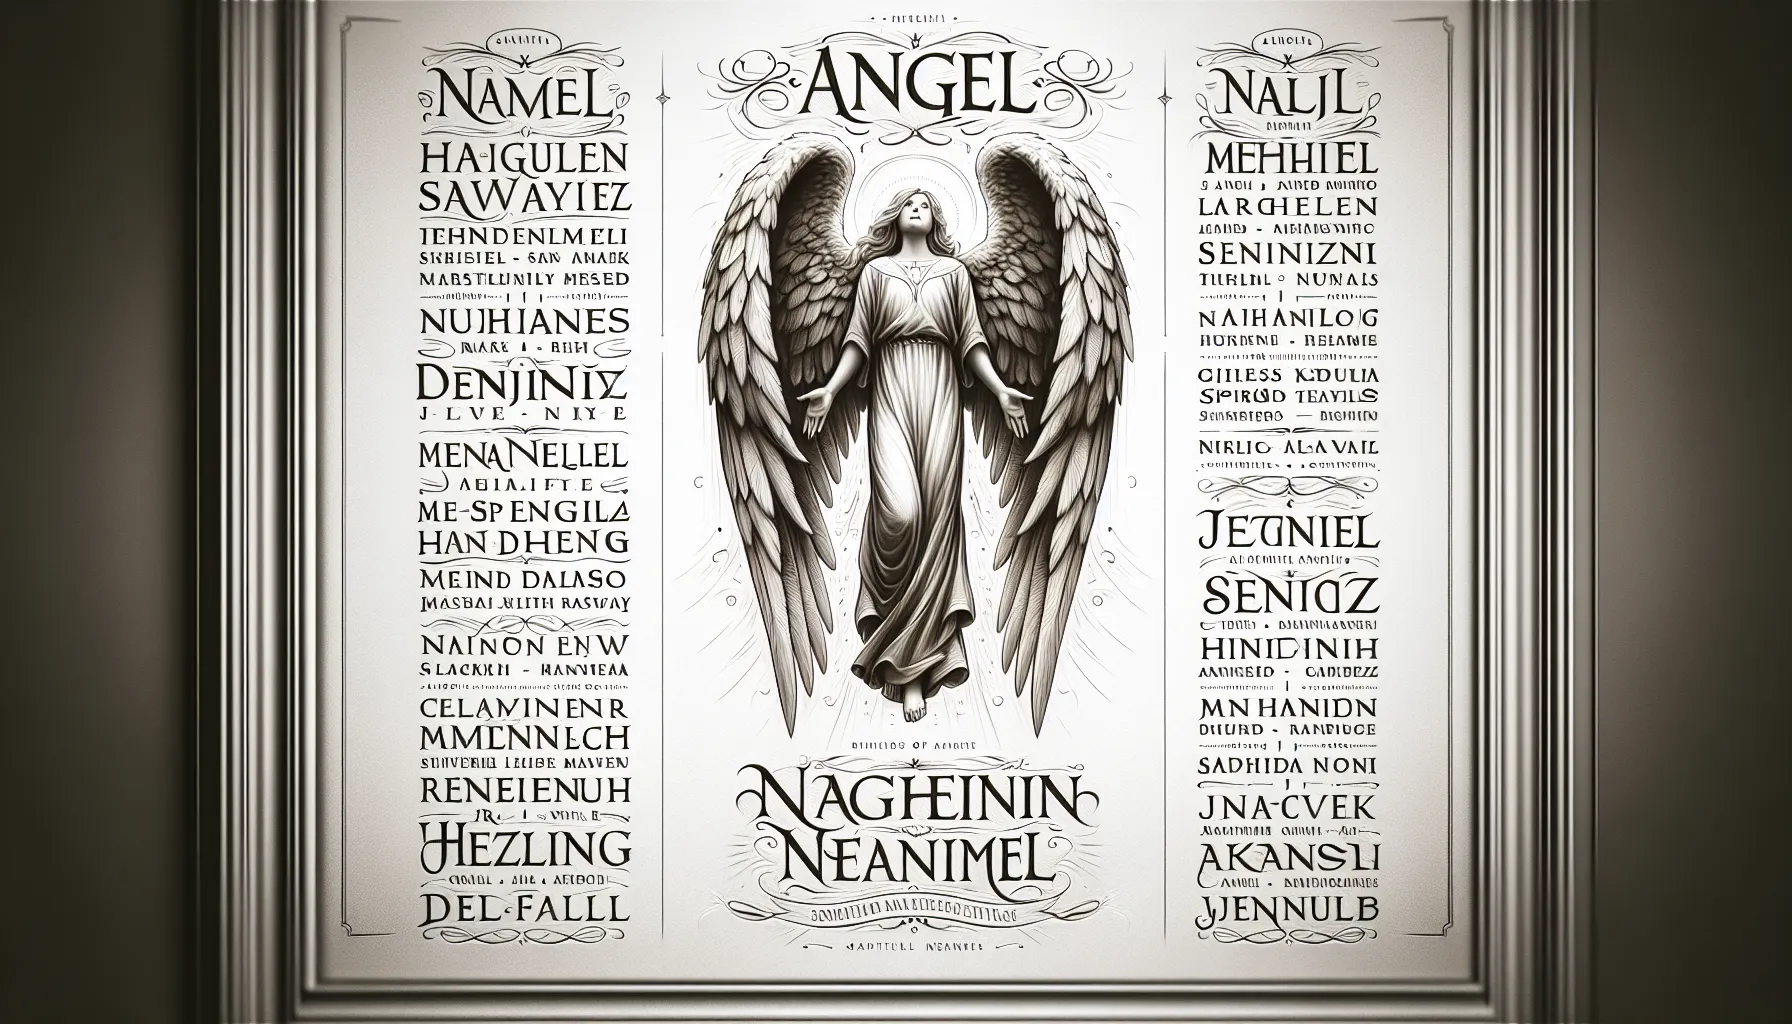 Imagen que muestra una lista de nombres de ángeles en la Biblia junto con sus significados divinos.